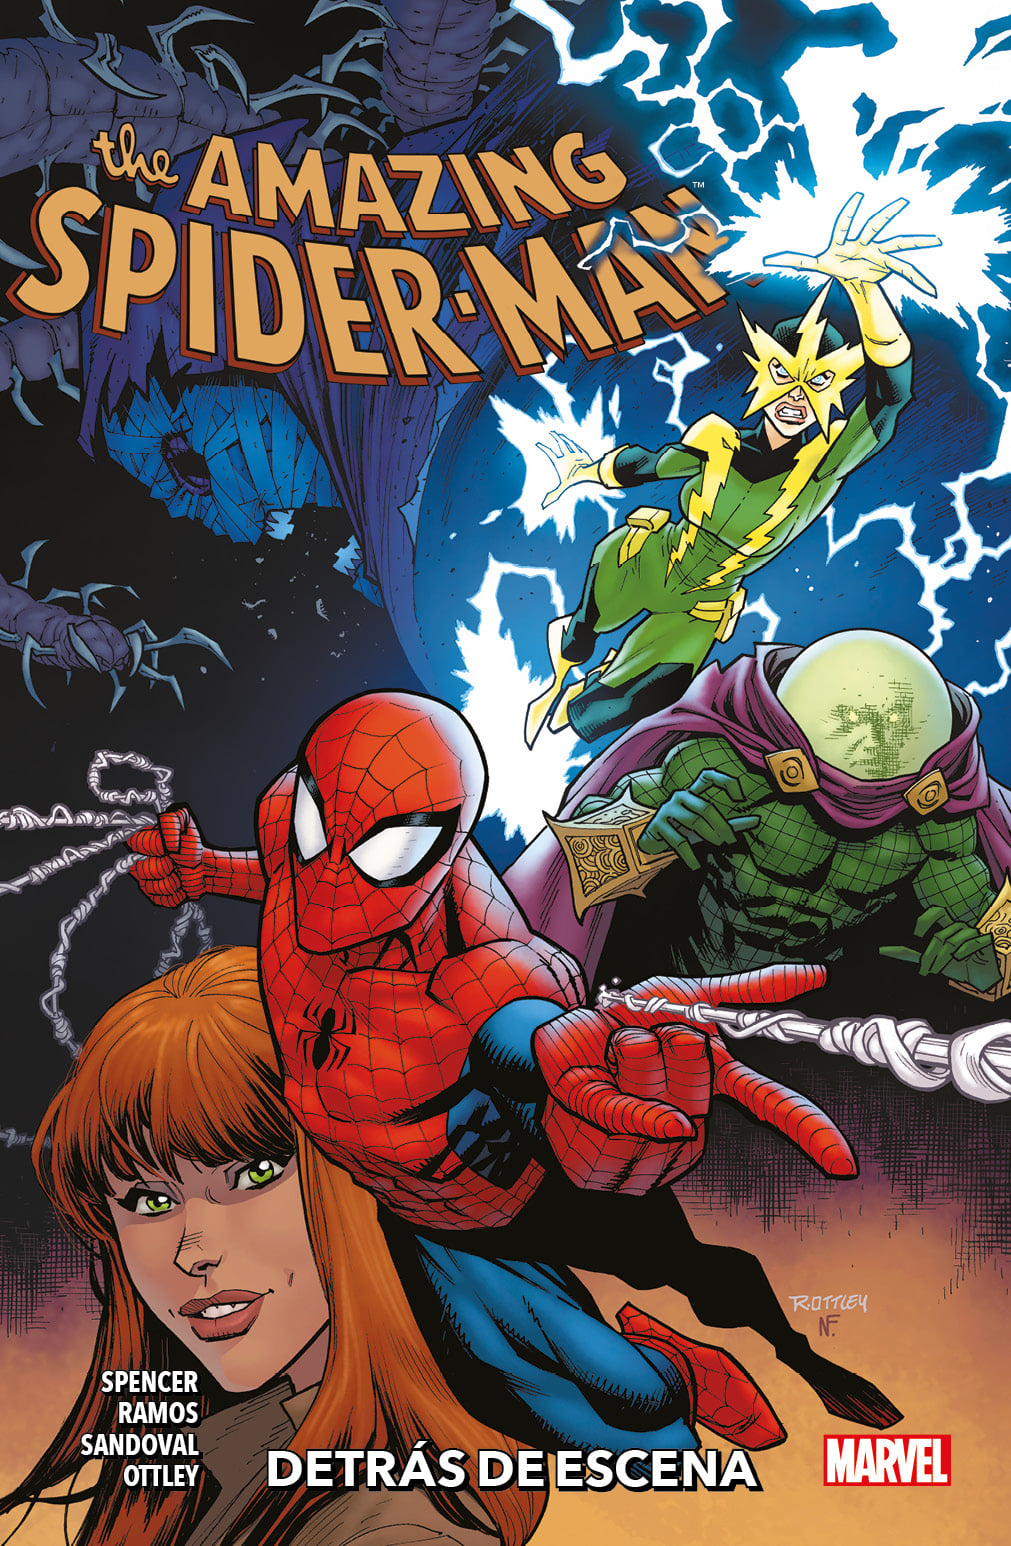 5 Amazing Spiderman Detras de Escena